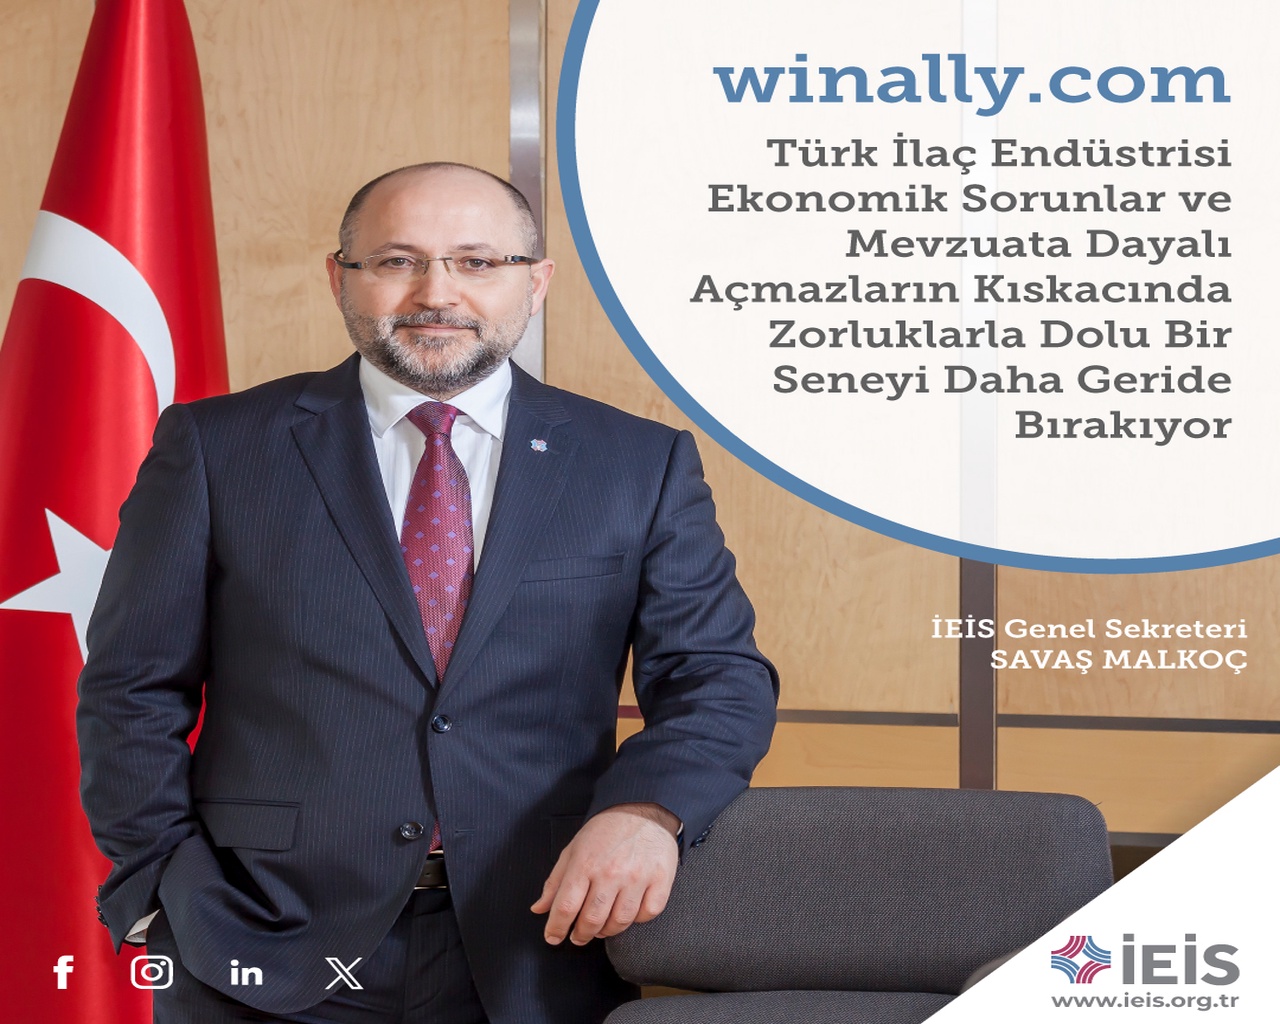 Winally.com - Türk İlaç Endüstrisi Zorluklarla Dolu Bir Seneyi Daha Geride Bırakıyor